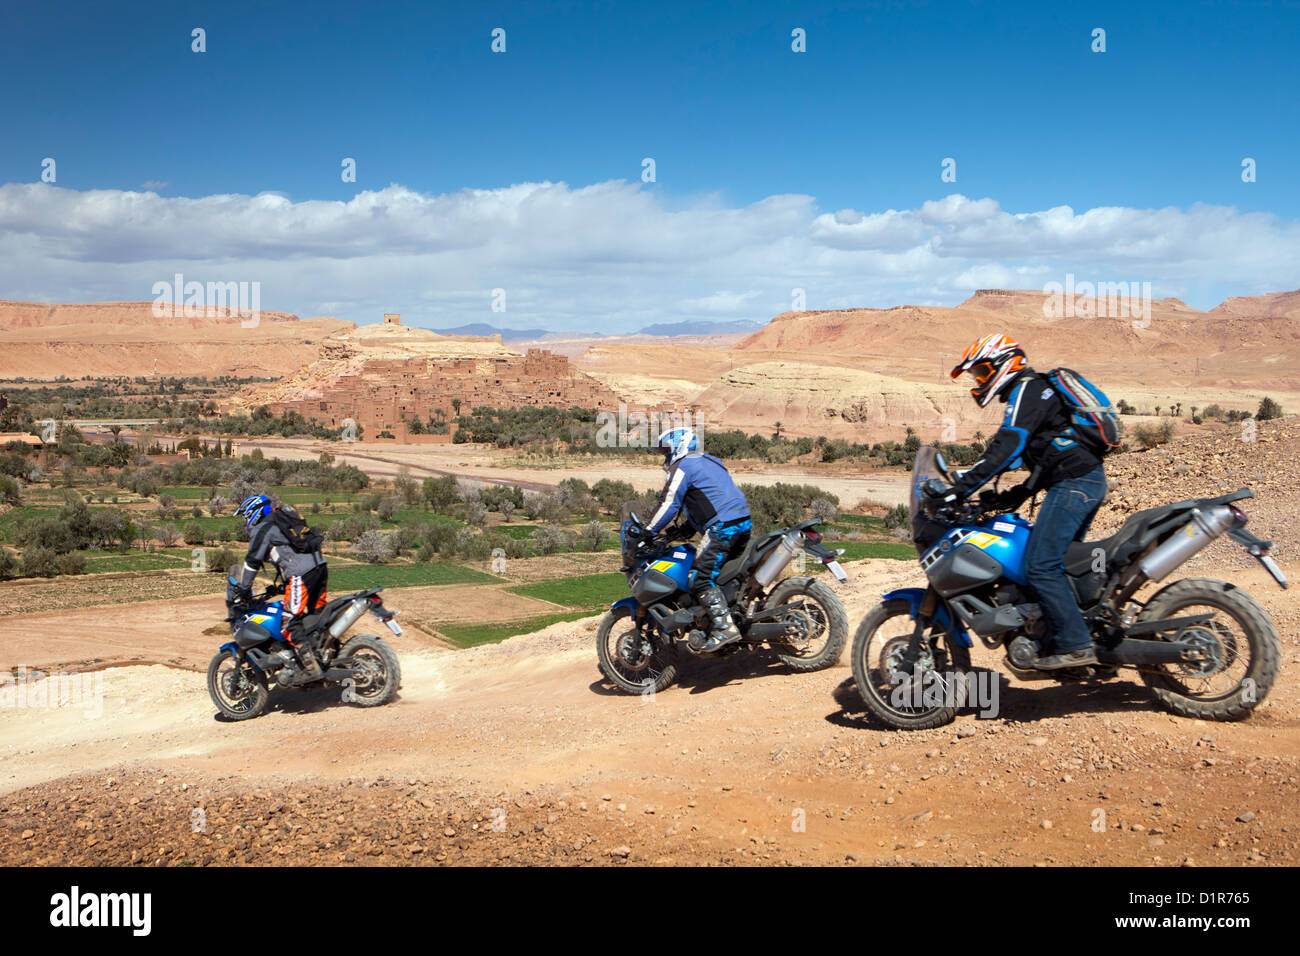 Il Marocco, Ait Ben Haddou, antica fortezza o kasbah o ksar. Motocicli. Foto Stock